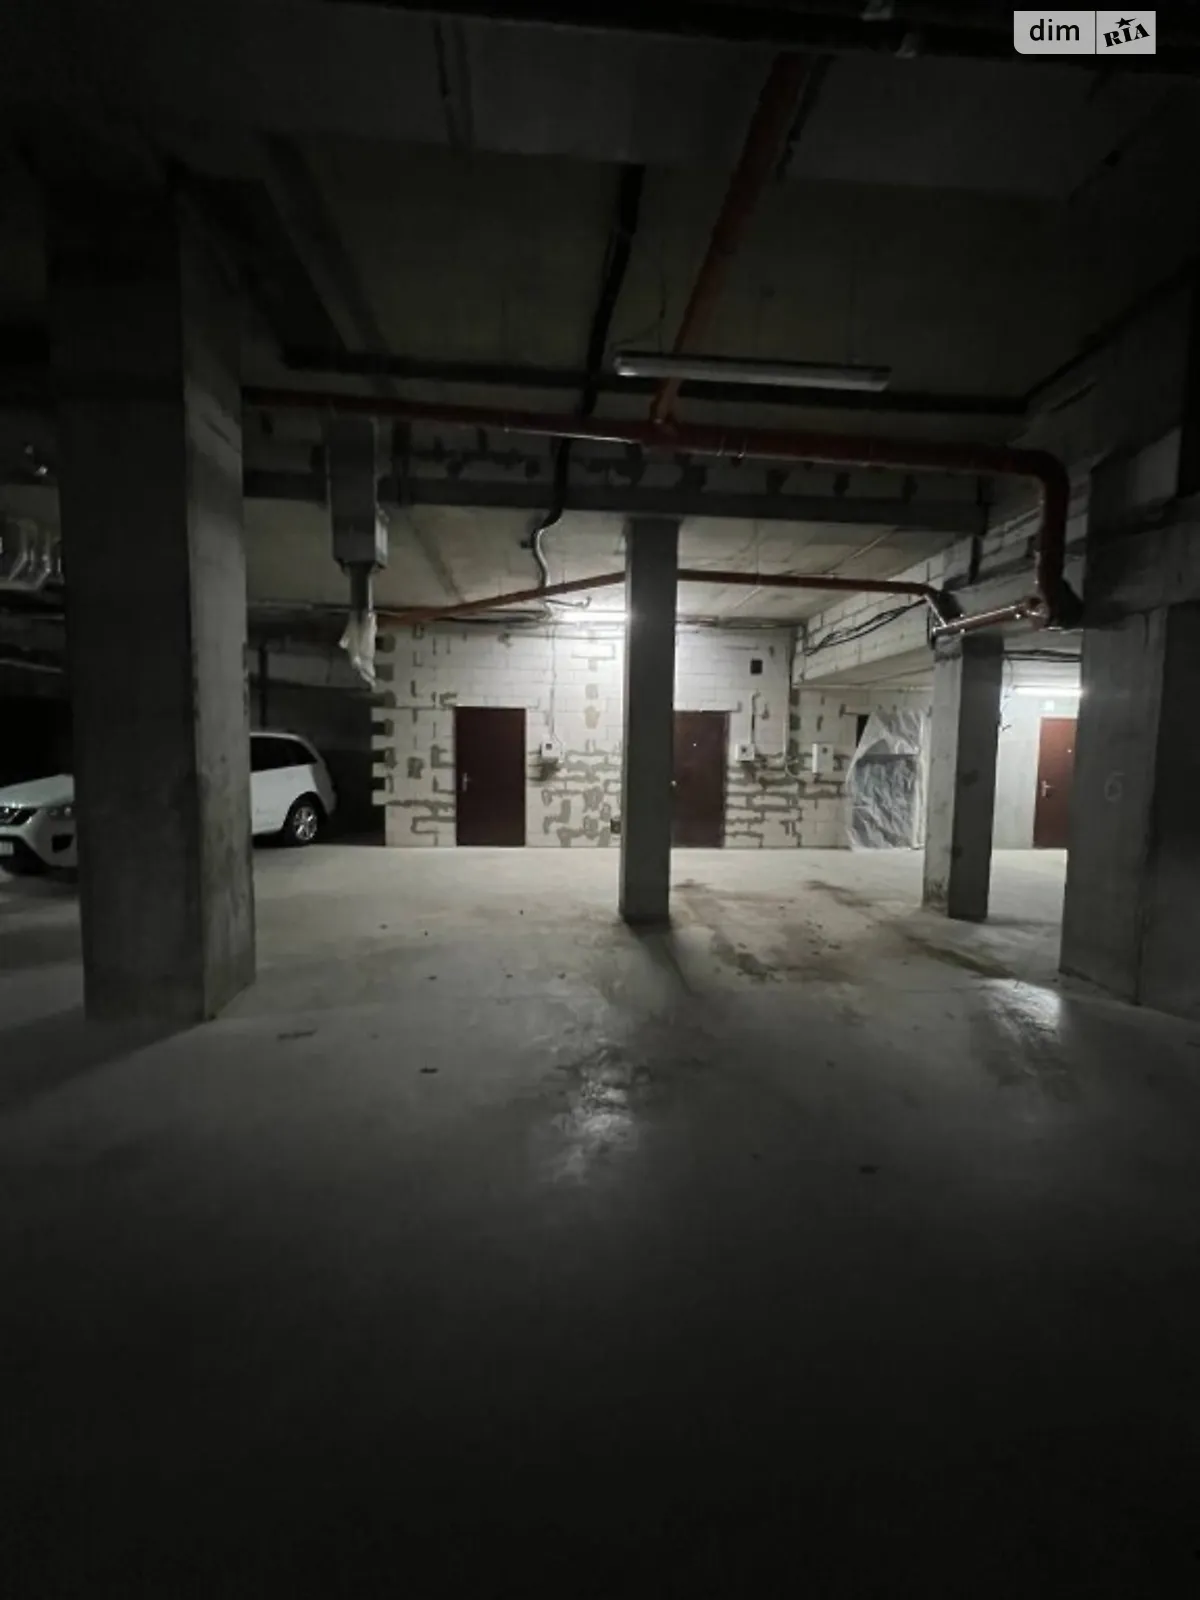 Продается подземный паркинг под легковое авто на 18 кв. м - фото 4